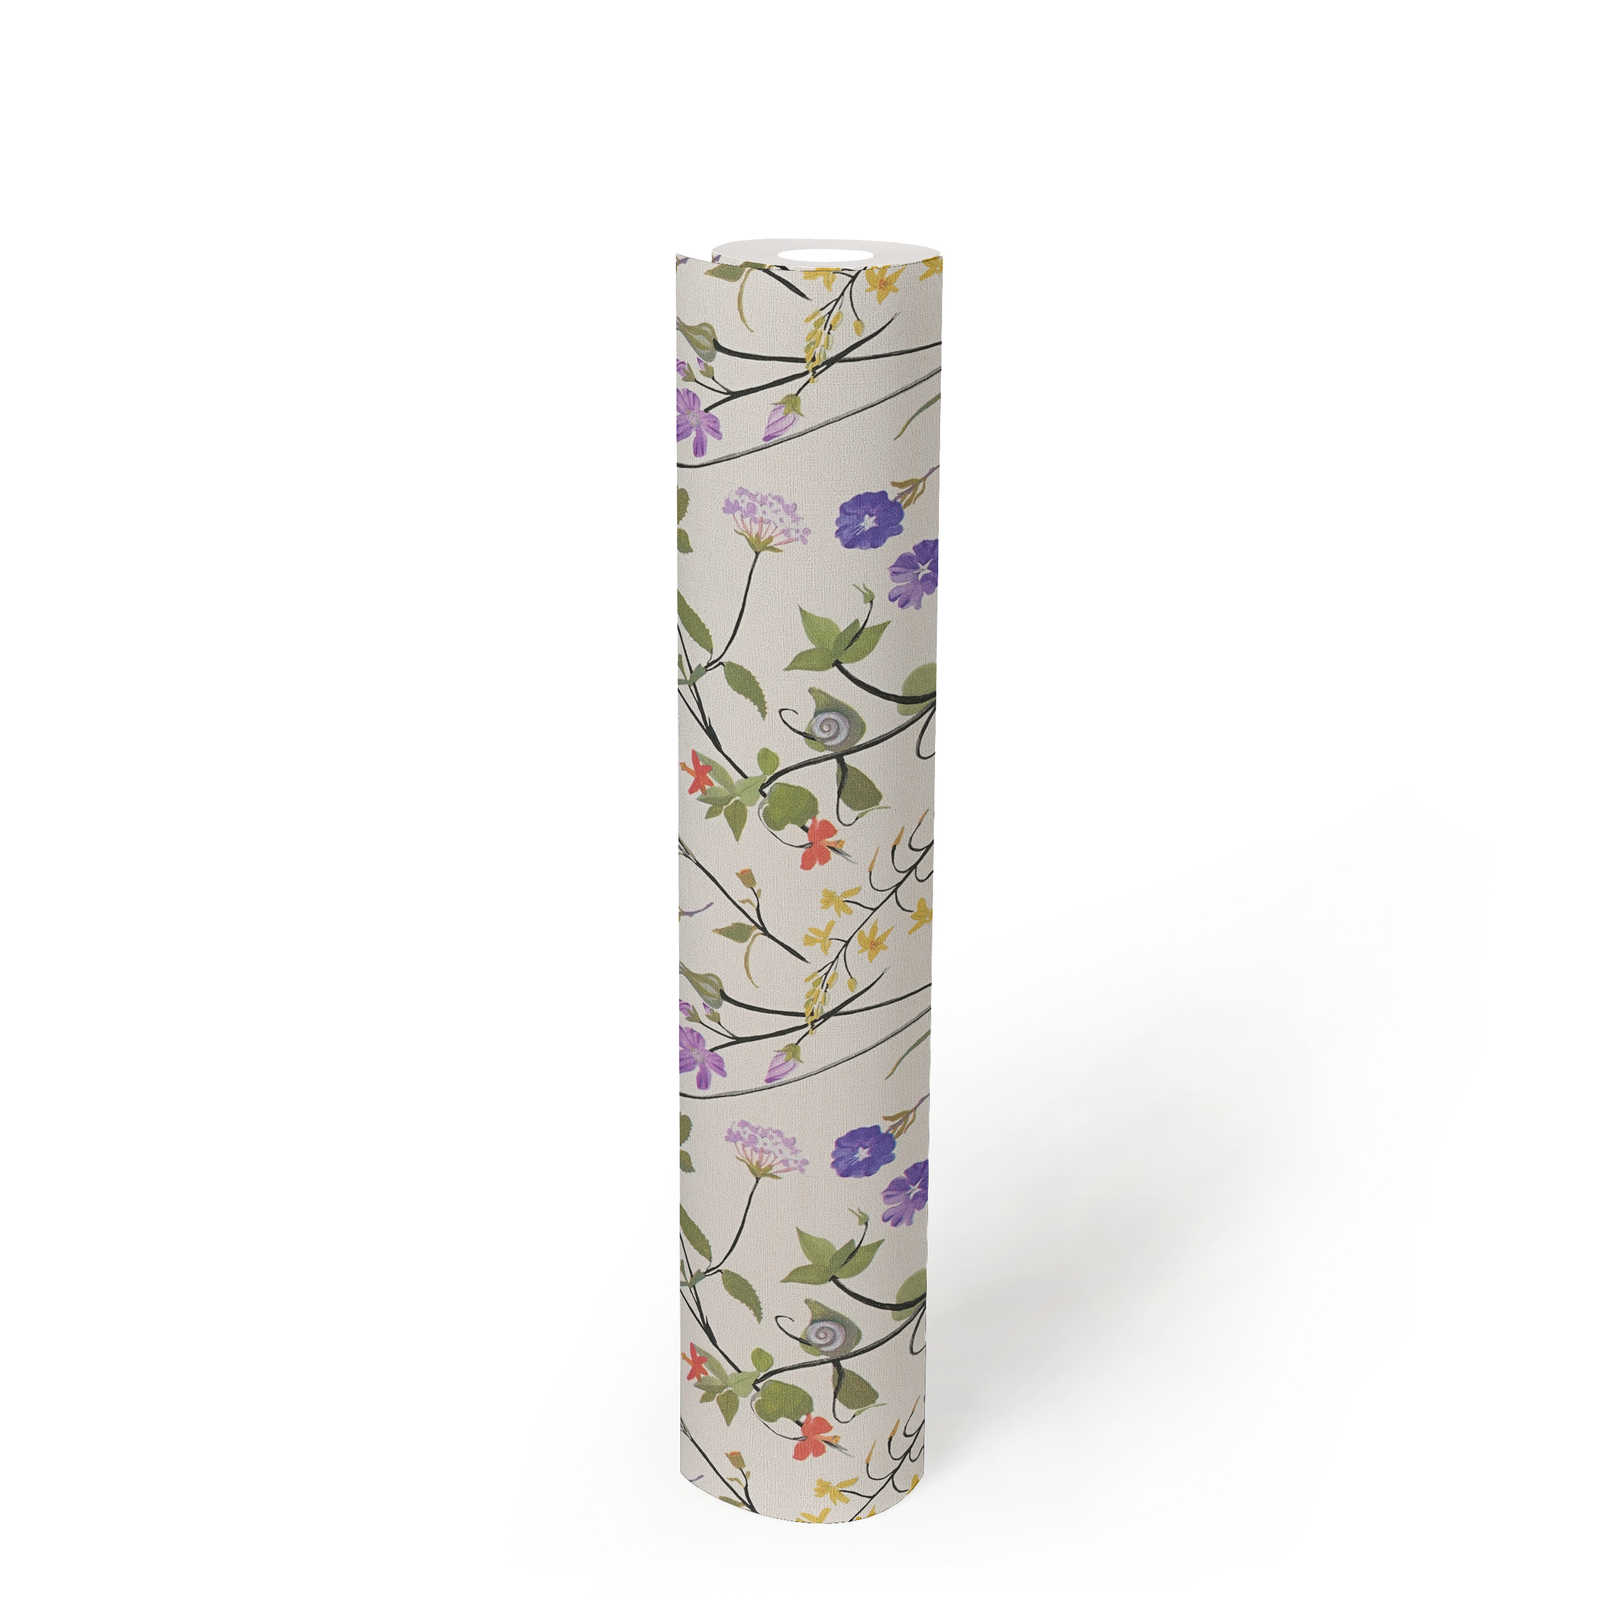             Florale Tapete mit detailliertem Blumenmuster – Creme, Grün, Bunt
        